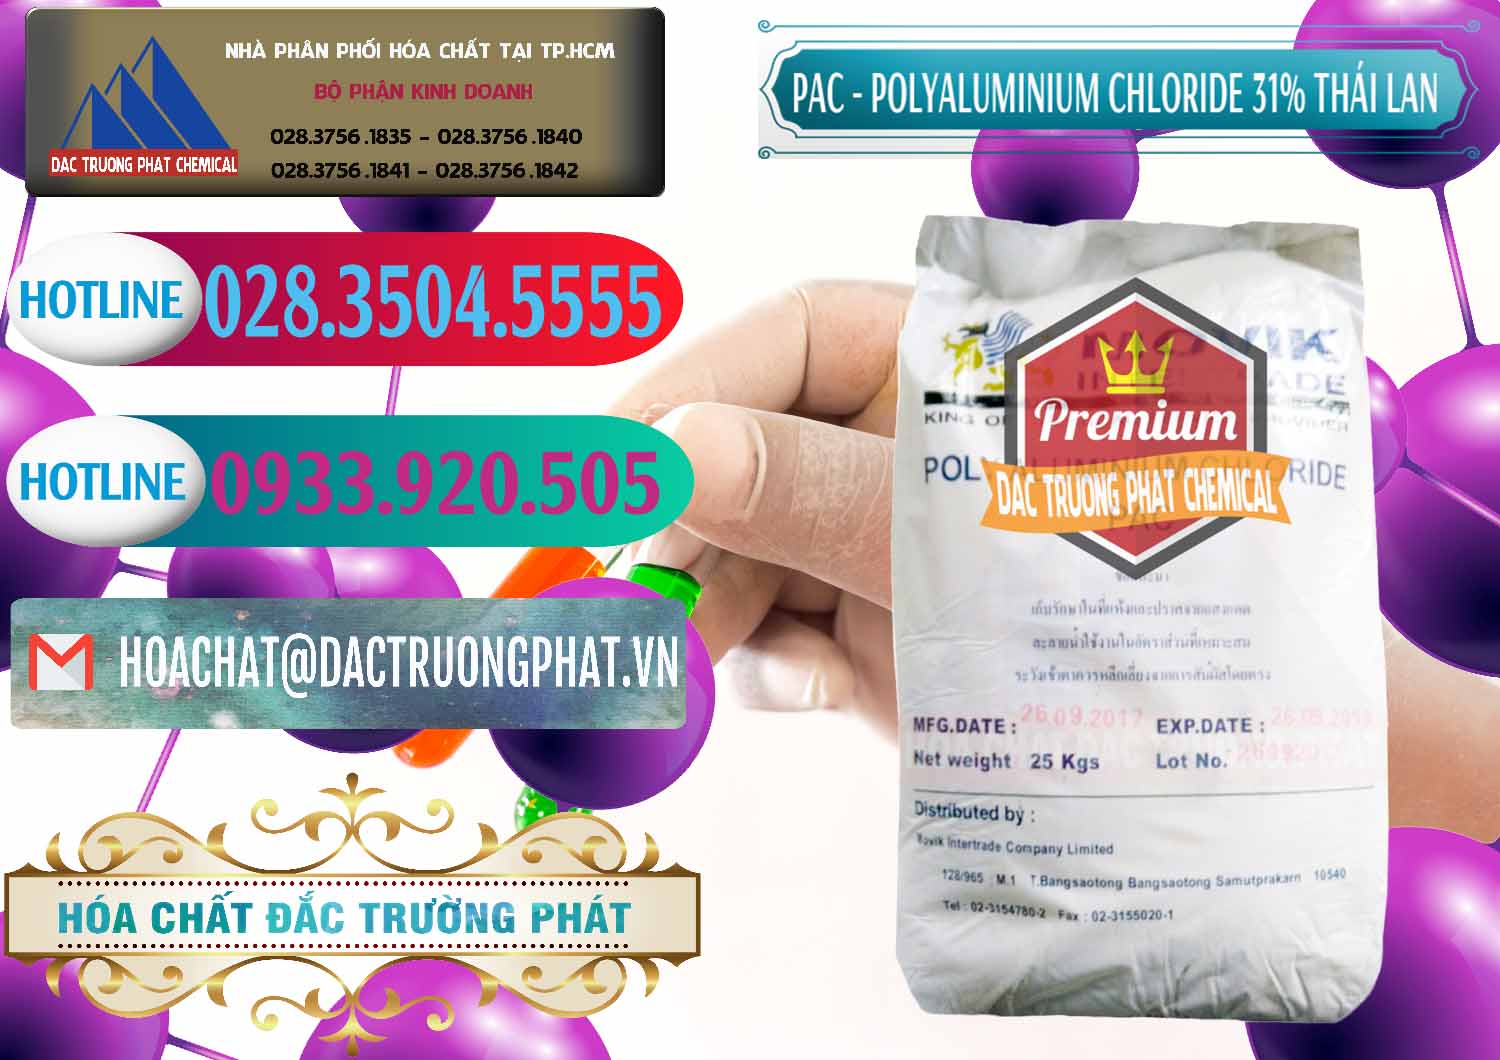 Cty chuyên phân phối _ bán PAC - Polyaluminium Chloride 31% Thái Lan Thailand - 0469 - Đơn vị bán và phân phối hóa chất tại TP.HCM - truongphat.vn